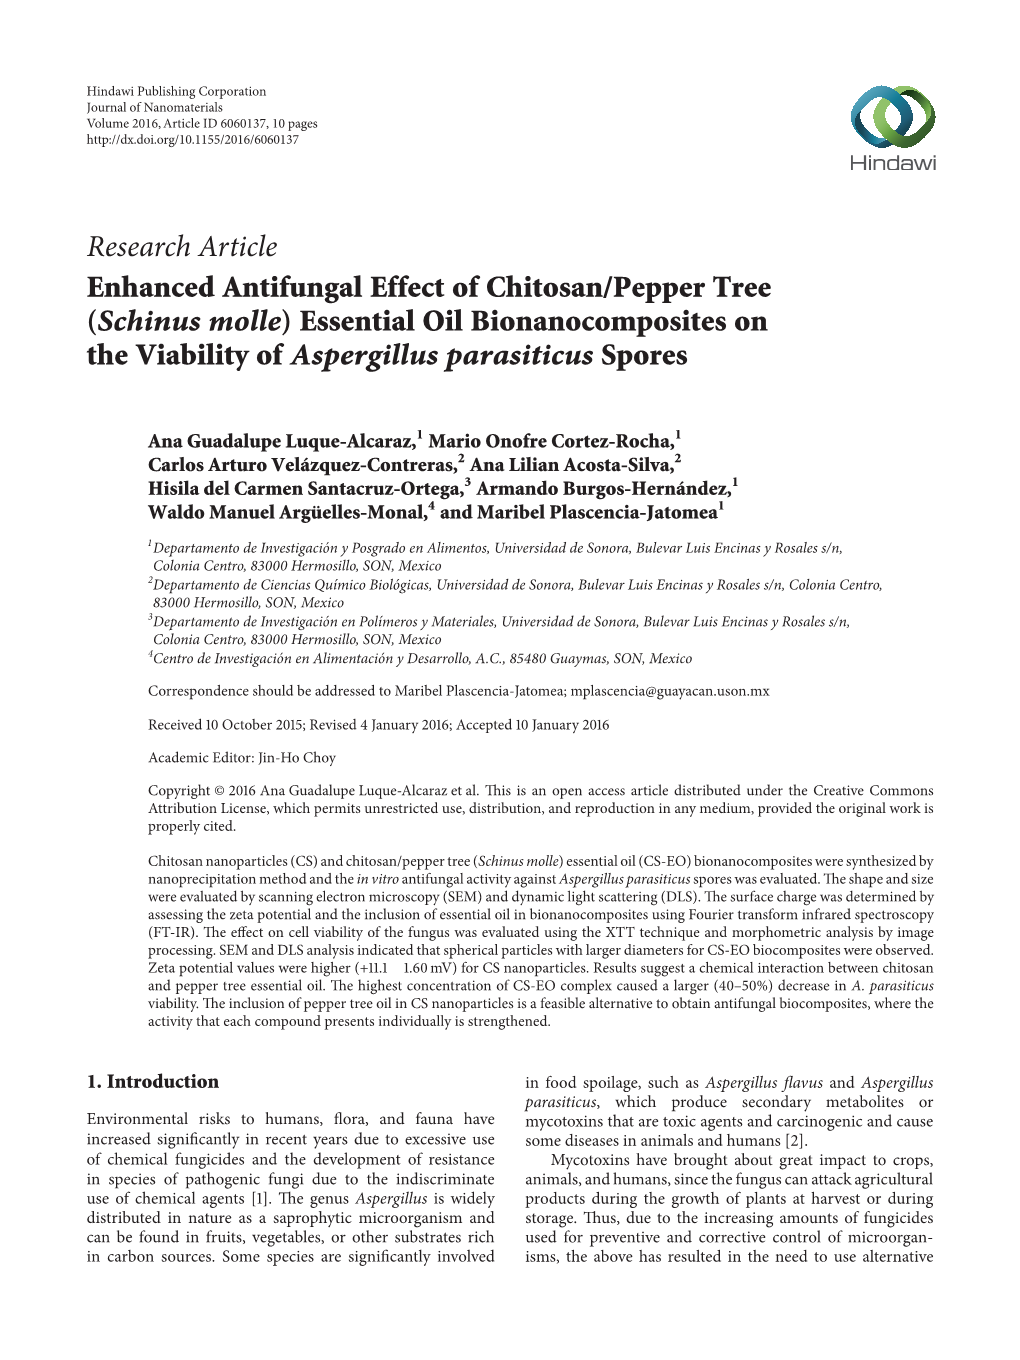 (Schinus Molle) Essential Oil Bionanocomposites on the Viability of Aspergillus Parasiticus Spores